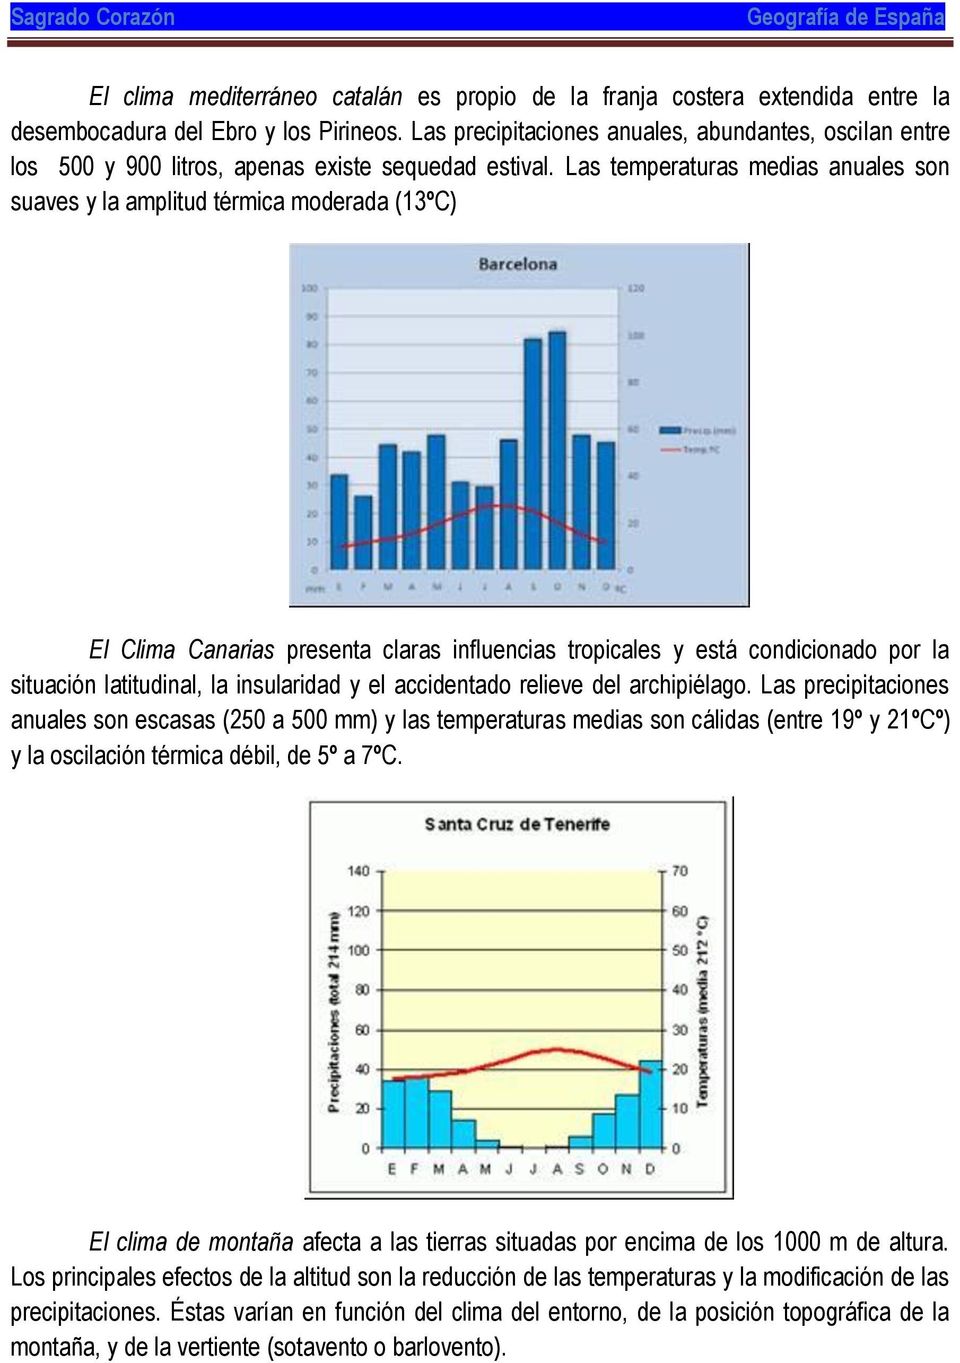 Las temperaturas medias anuales son suaves y la amplitud térmica moderada (13ºC) El Canarias presenta claras influencias tropicales y está condicionado por la situación latitudinal, la insularidad y